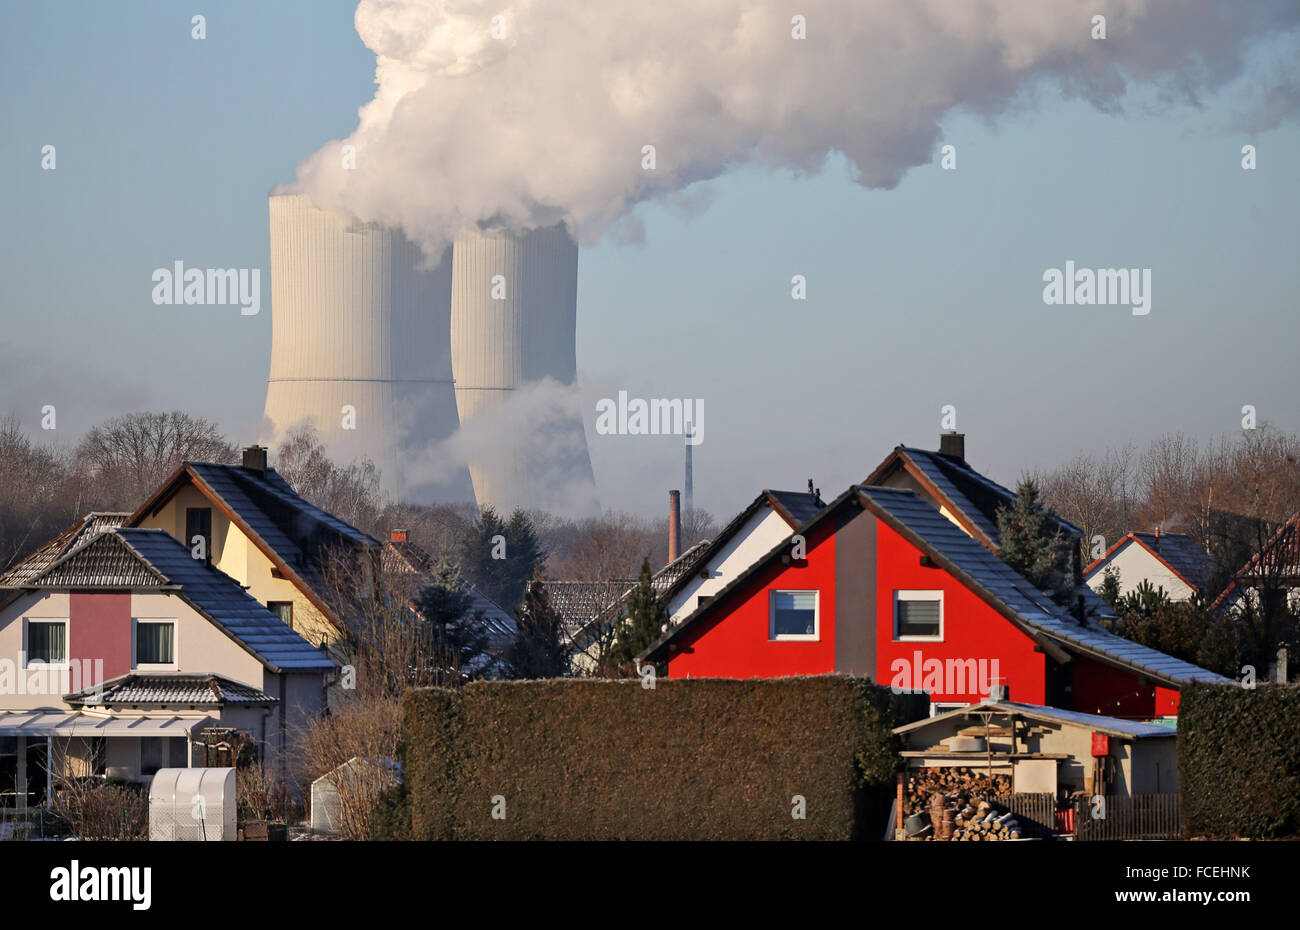 Roetha, Germania. Il 22 gennaio, 2016. Vapore sorge dalle torri di raffreddamento della Lippendorf power plant nelle vicinanze di un quartiere residenziale in Roetha, Germania, 22 gennaio 2016. Il marrone del carbone vegetale, che è entrato in funzione nel 2000, produce circa 1900 megawatt di energia con un fattore di efficienza del 40 percento. L'impianto alimenta la città di Lipsia con riscaldamento tramite la sua lunga 15 chilometri a lunga distanza pipeline di calore. Foto: Jan Woitas/dpa/Alamy Live News Foto Stock